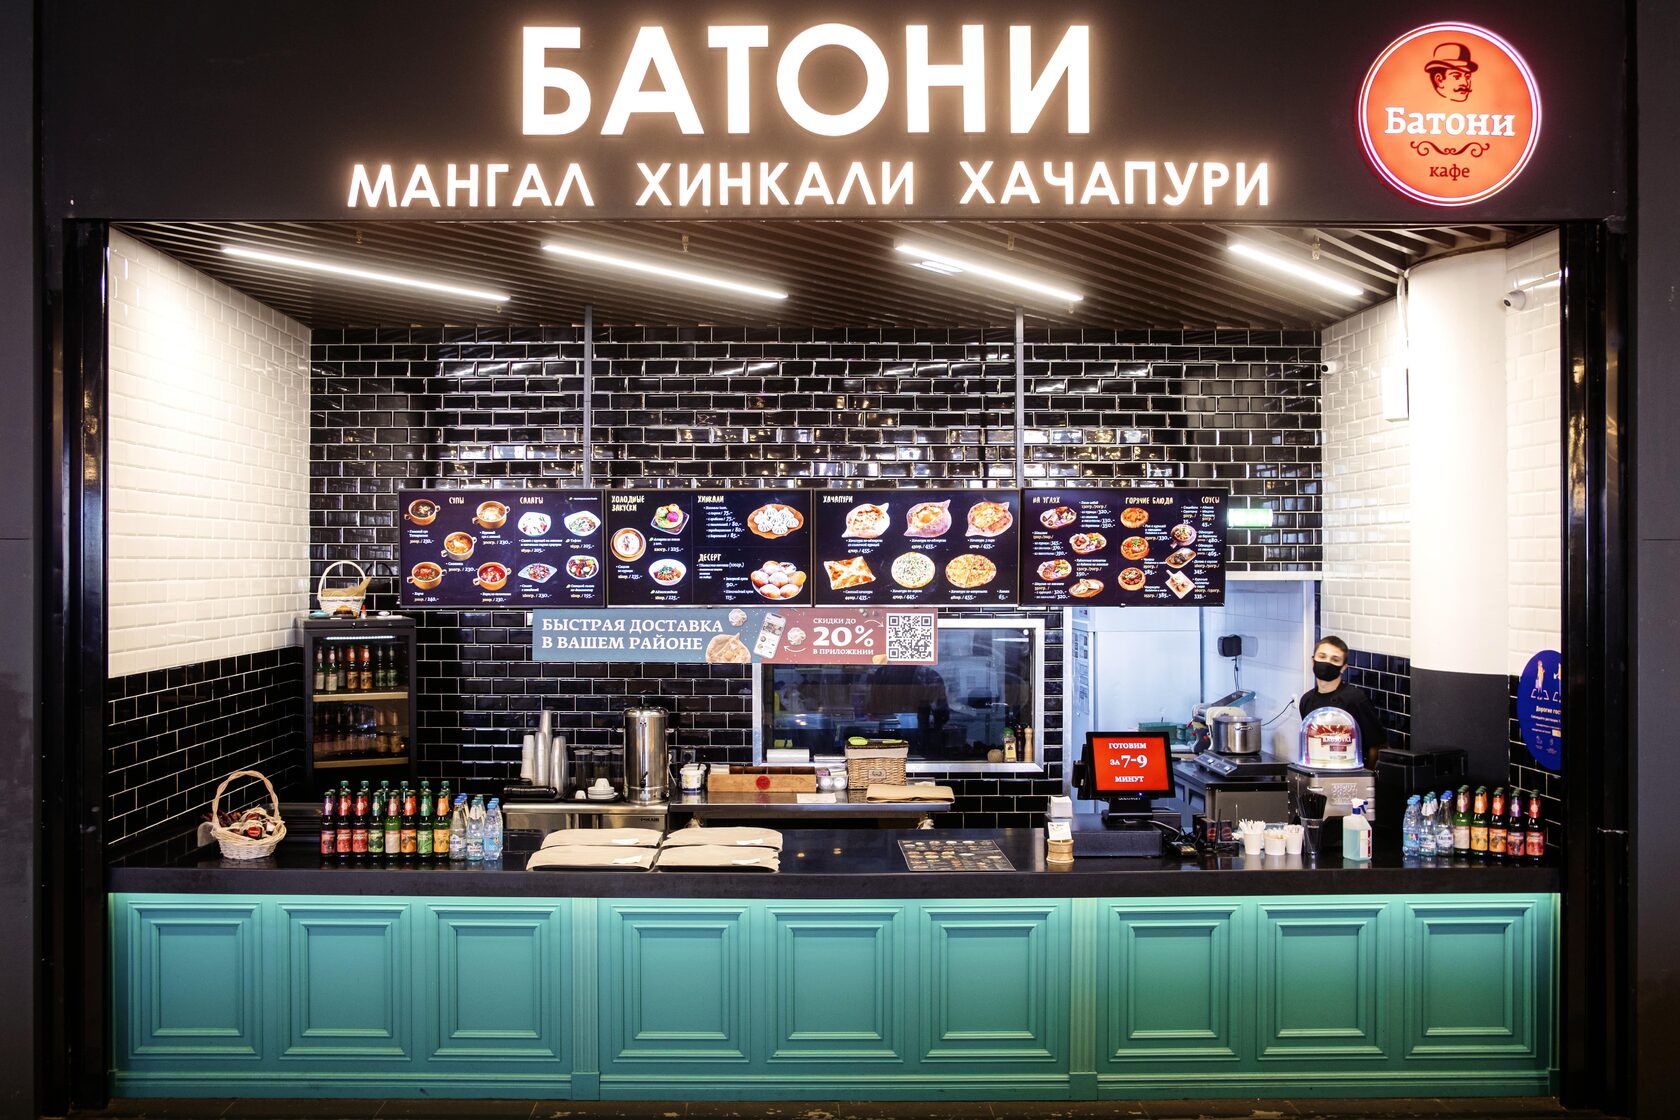 Батон ресторан меню. Кафе Батони. Батони ресторан Москва. Европолис фудкорт. Европолис кафе Батони.